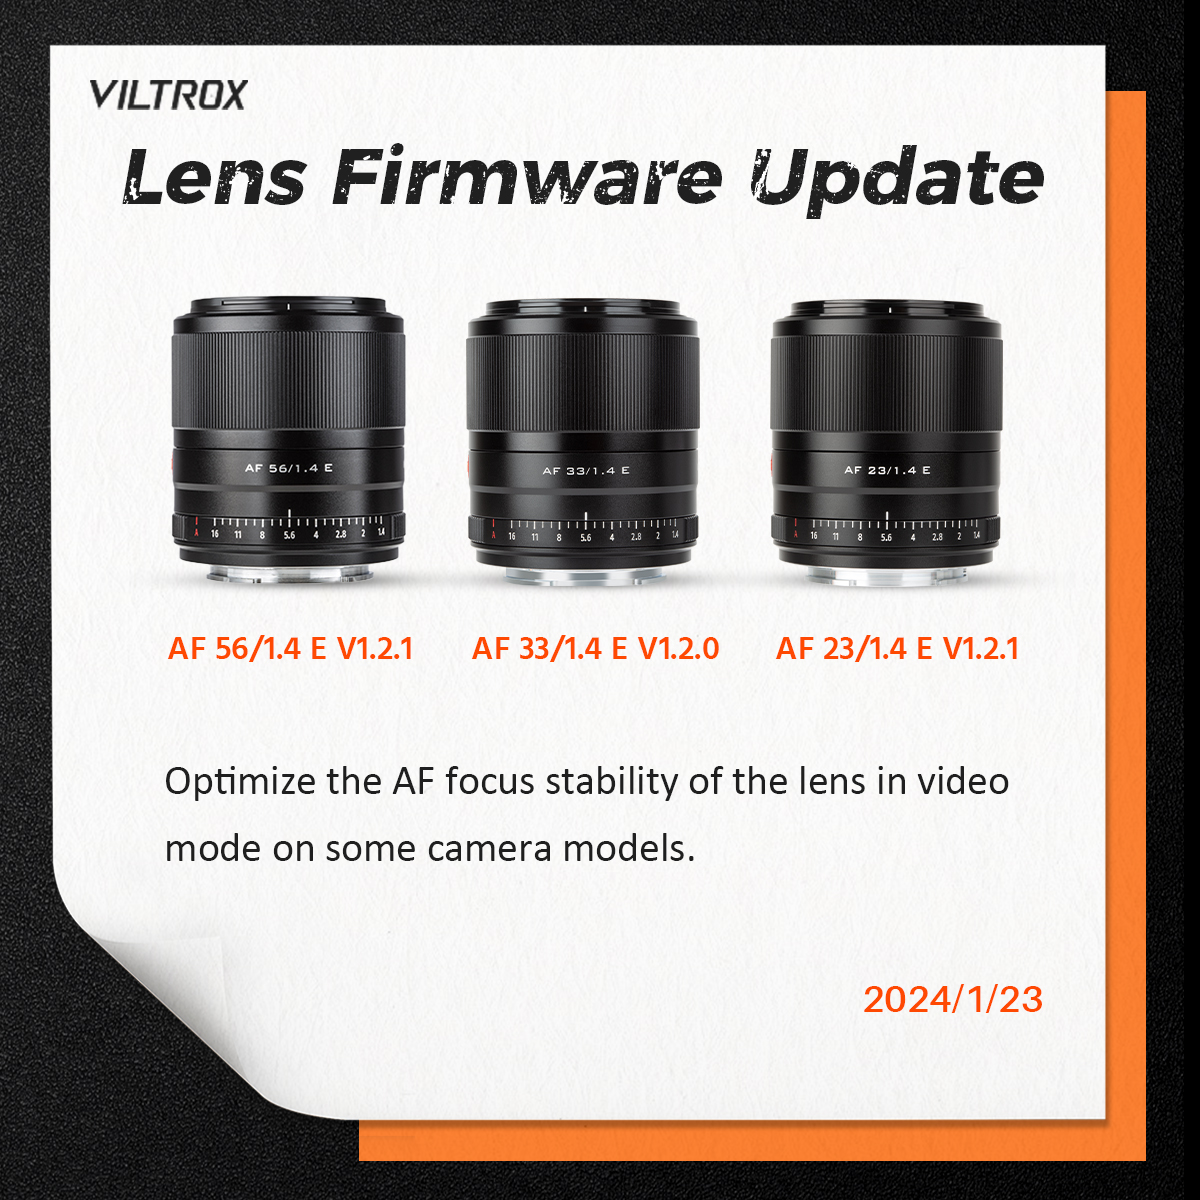 #FirmwareUpdate
📷VILTROX Latest Camera Lens Firmware Update.
AF 23/1.4 E V1.2.1
AF 33/1.4 E V1.2.0
AF 56/1.4 E V1.2.1
================
📷Firmware Download at Viltrox Official Website: viltrox.com/xzzx